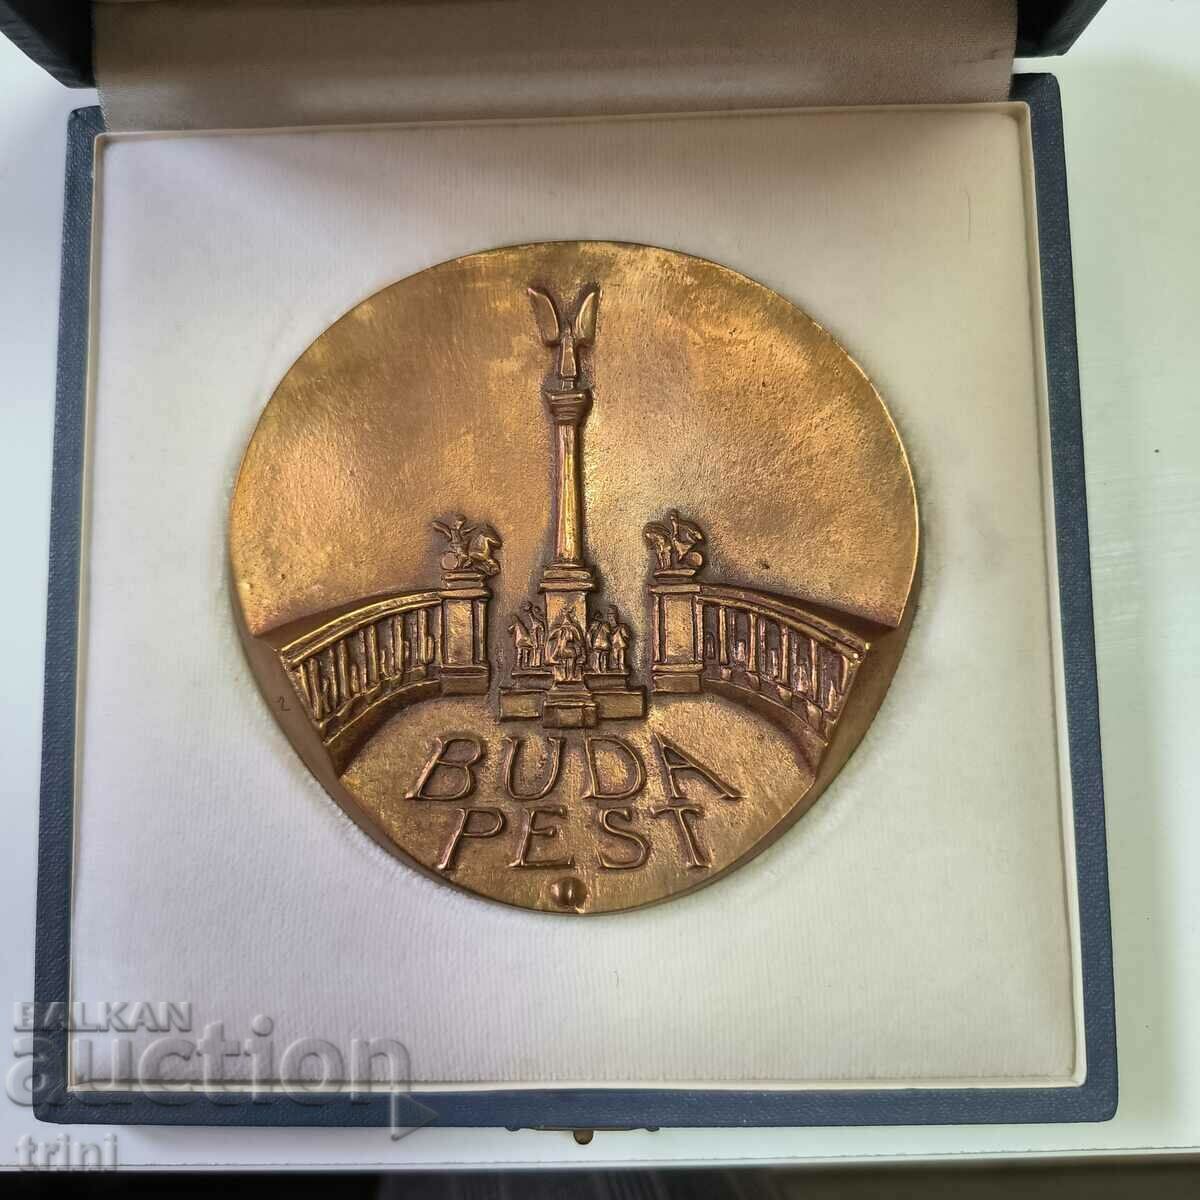 Μετάλλιο Μητροπολιτικού Συμβουλίου Βουδαπέστης - Μητροπολιτικό